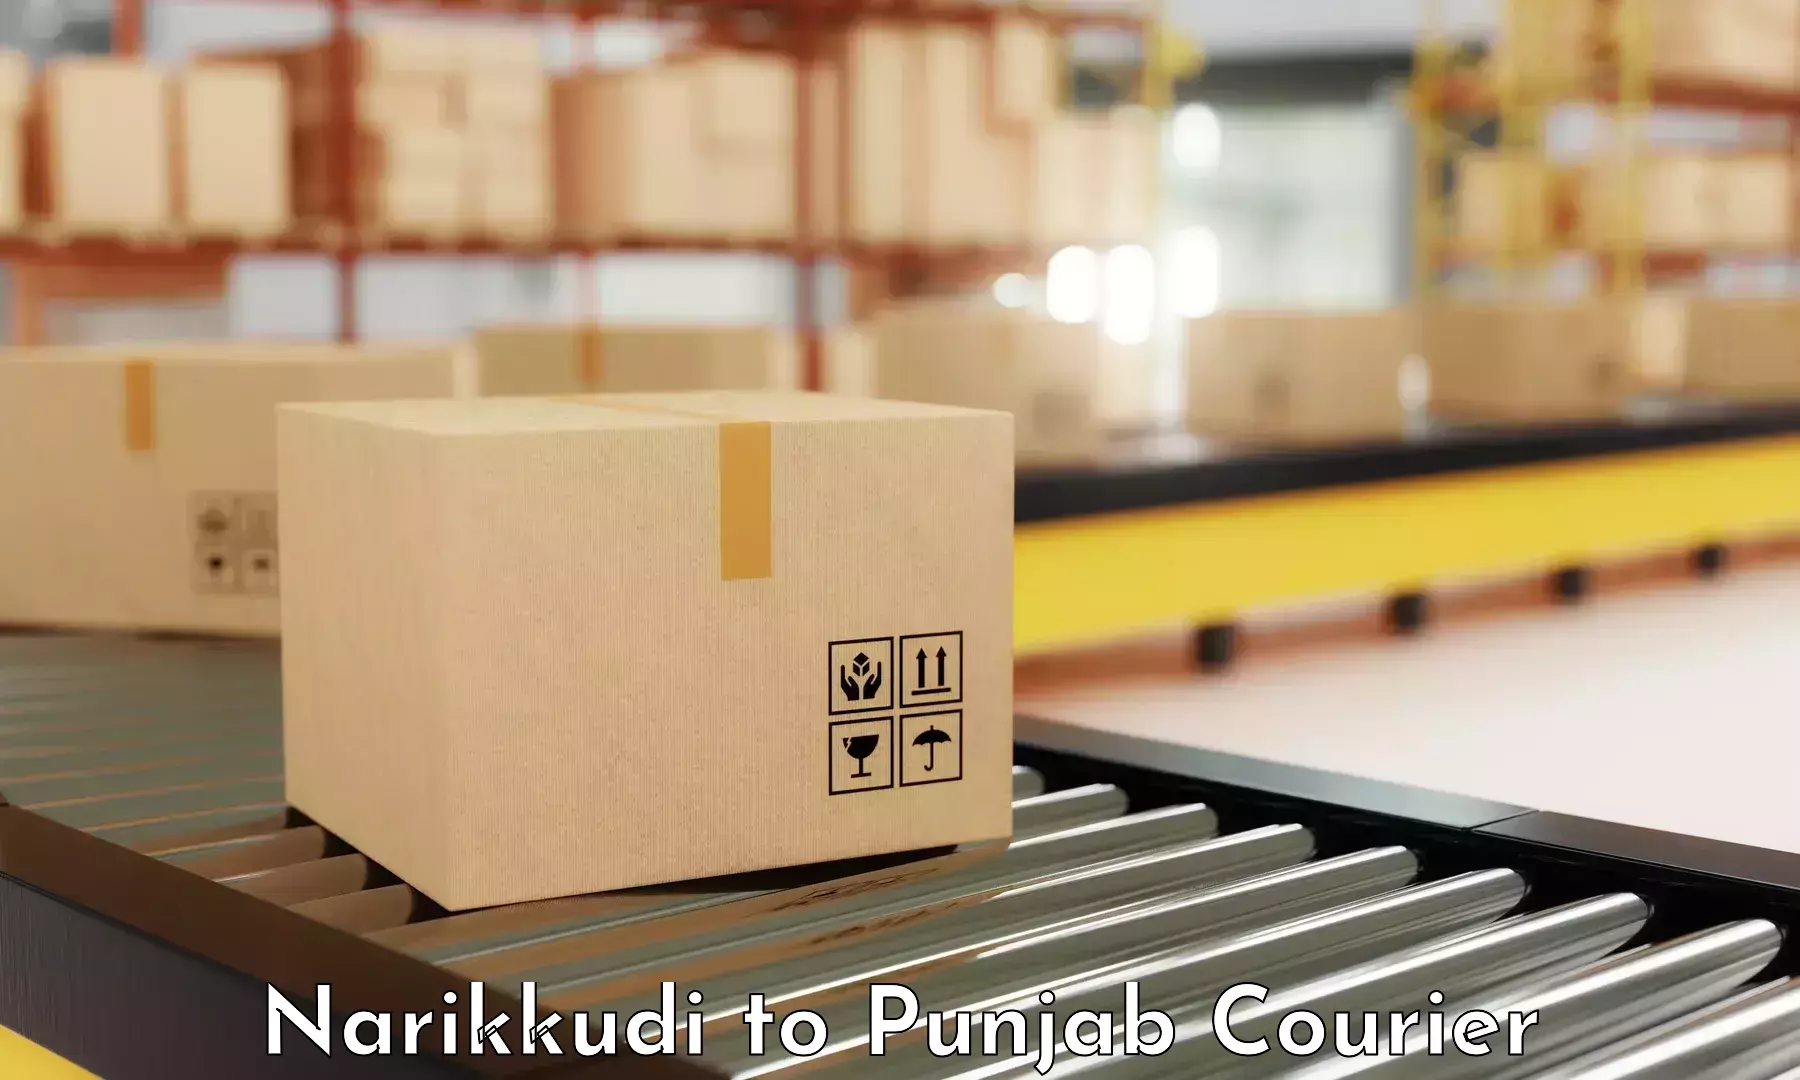 Online package tracking Narikkudi to Jalandhar